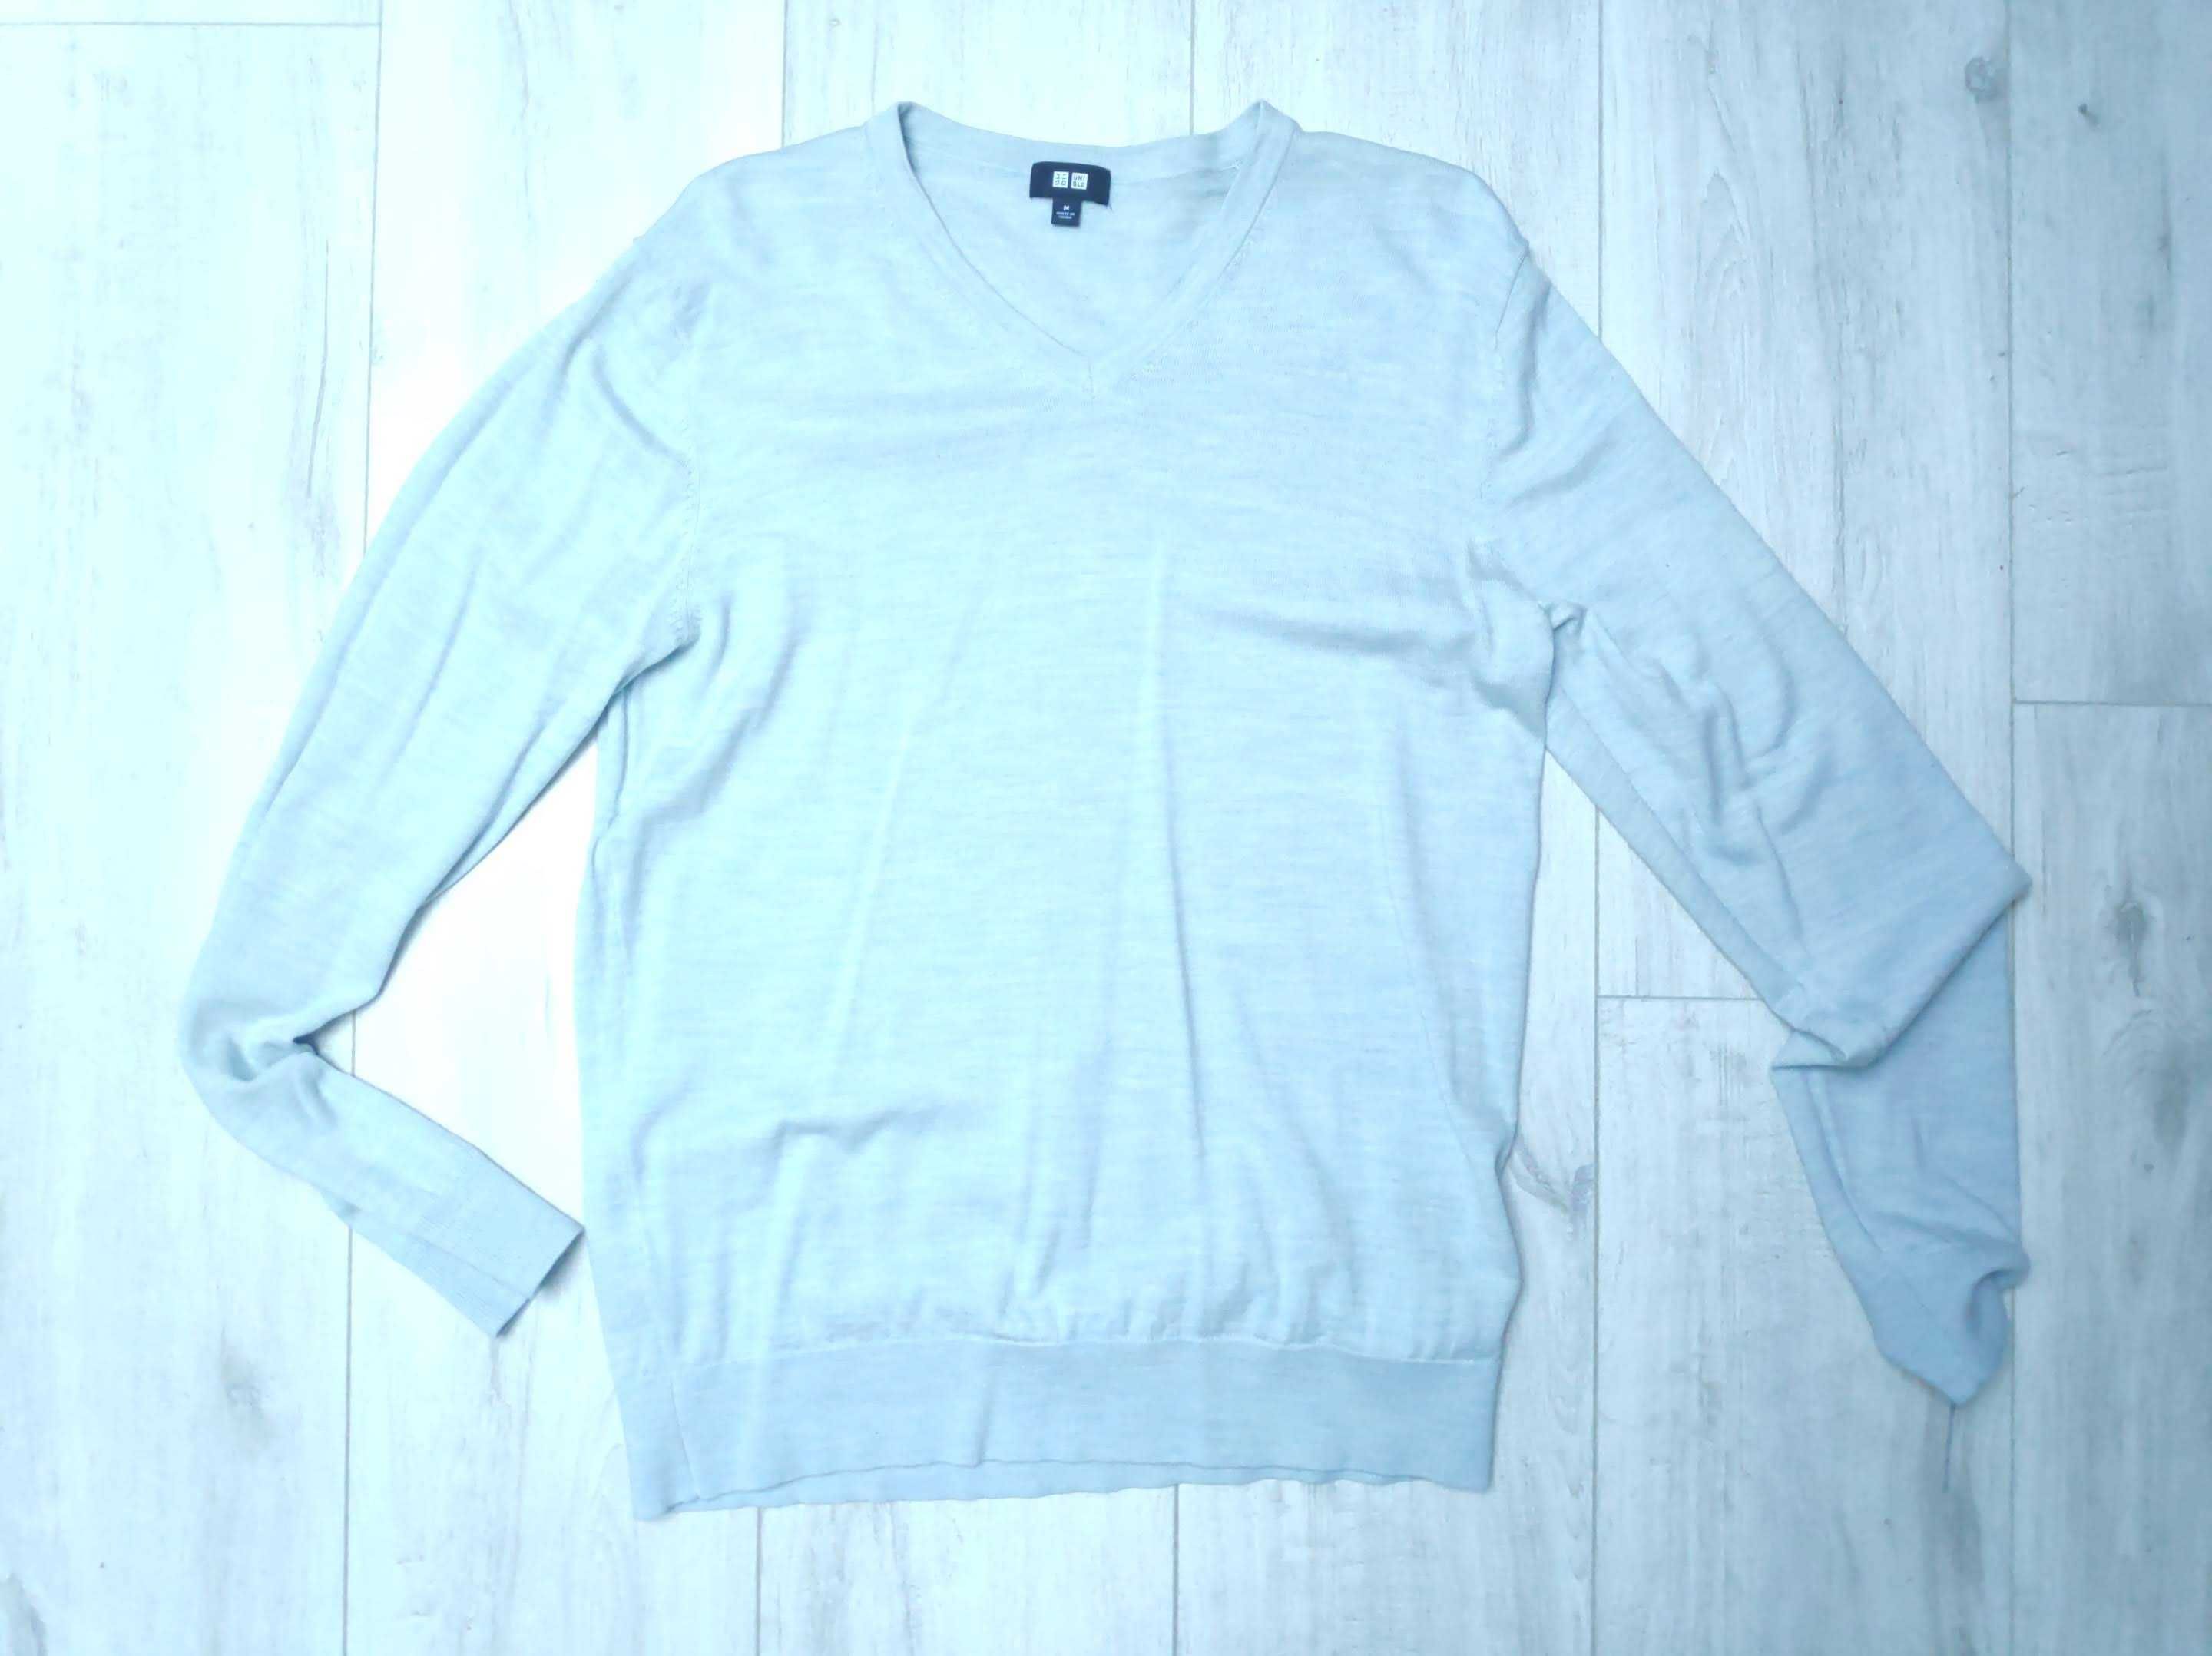 Jasnobłękitny sweter UniQloN, rozmiar M